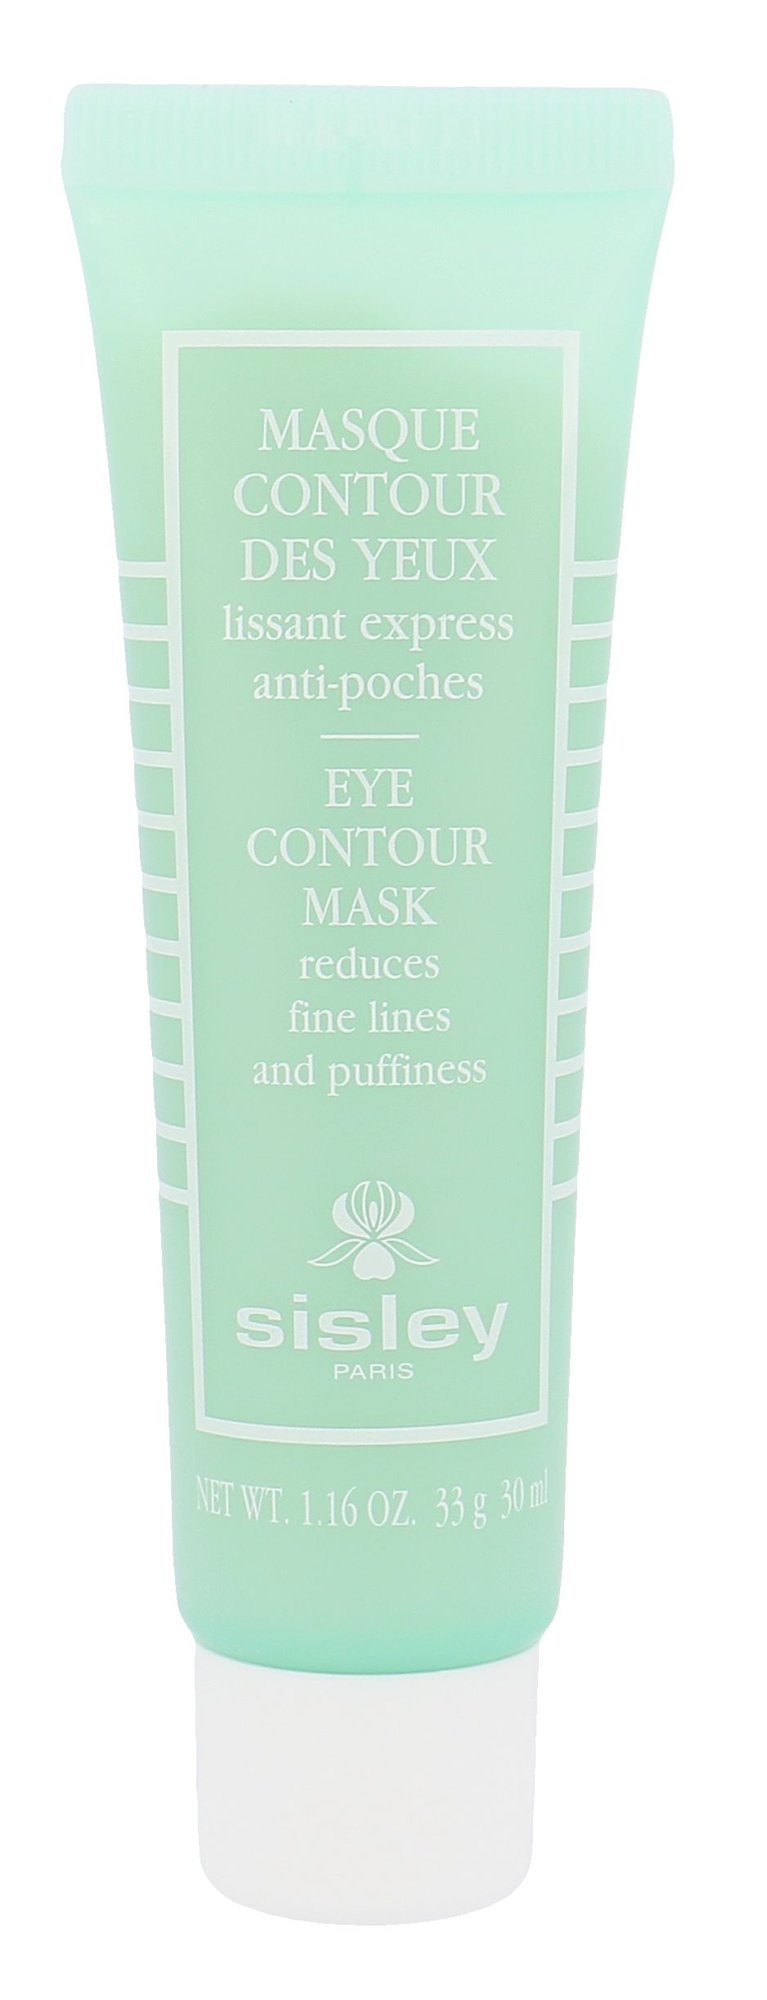 Sisley Eye Contour Mask 30ml NIŠINIAI paakių kaukė Testeris